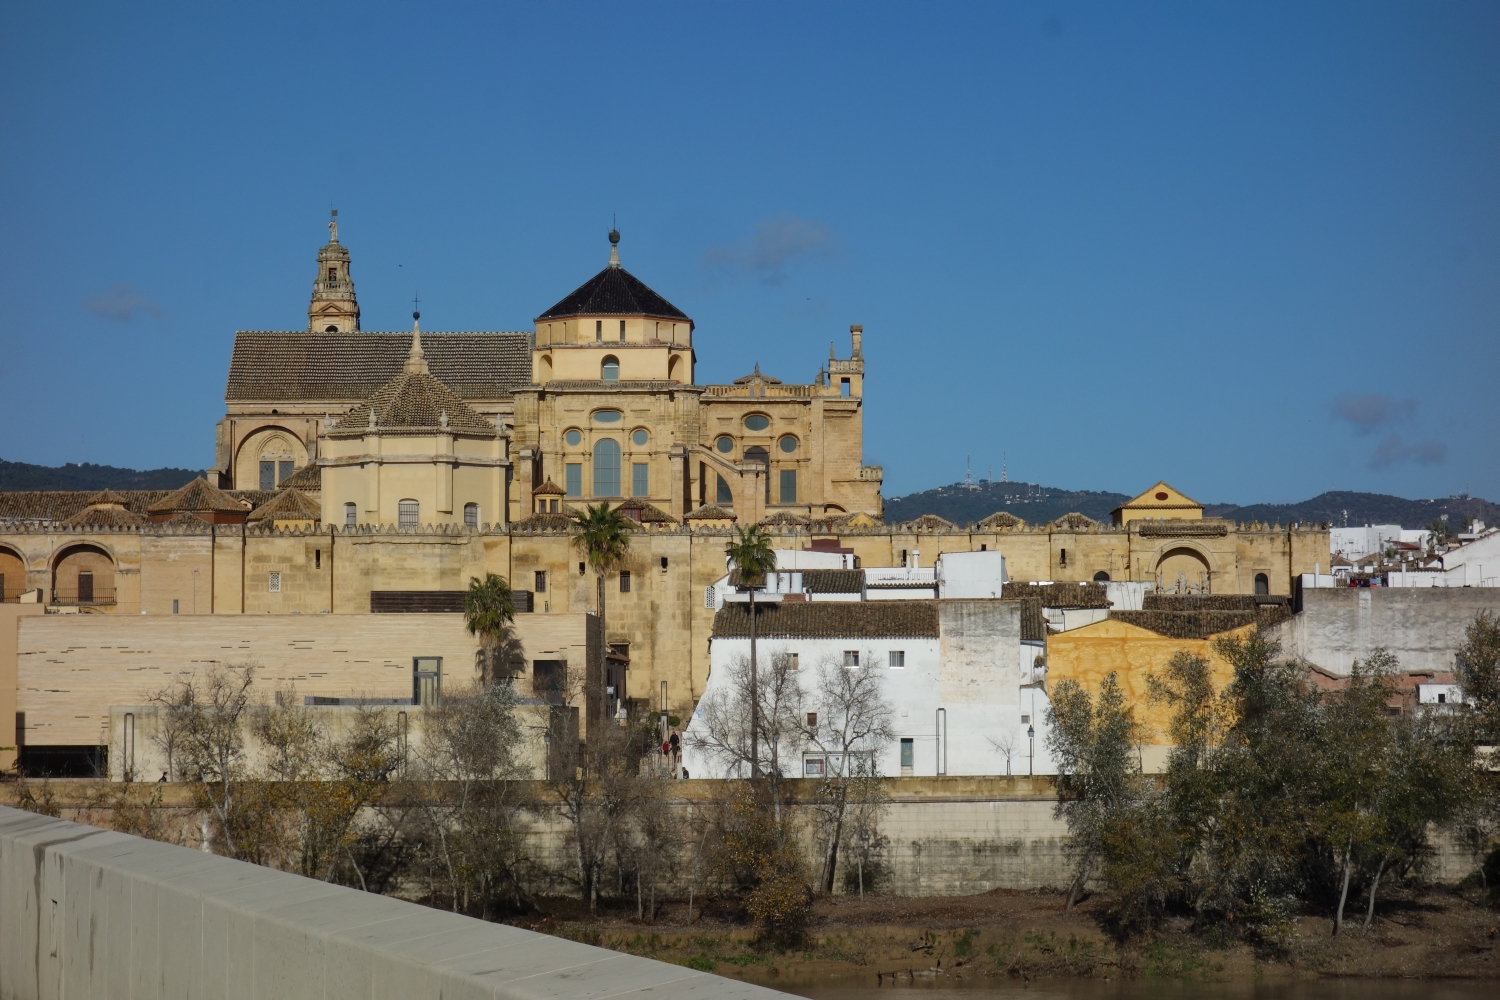 Mezquita de Córdoba - Southeast face of mosque, distant view